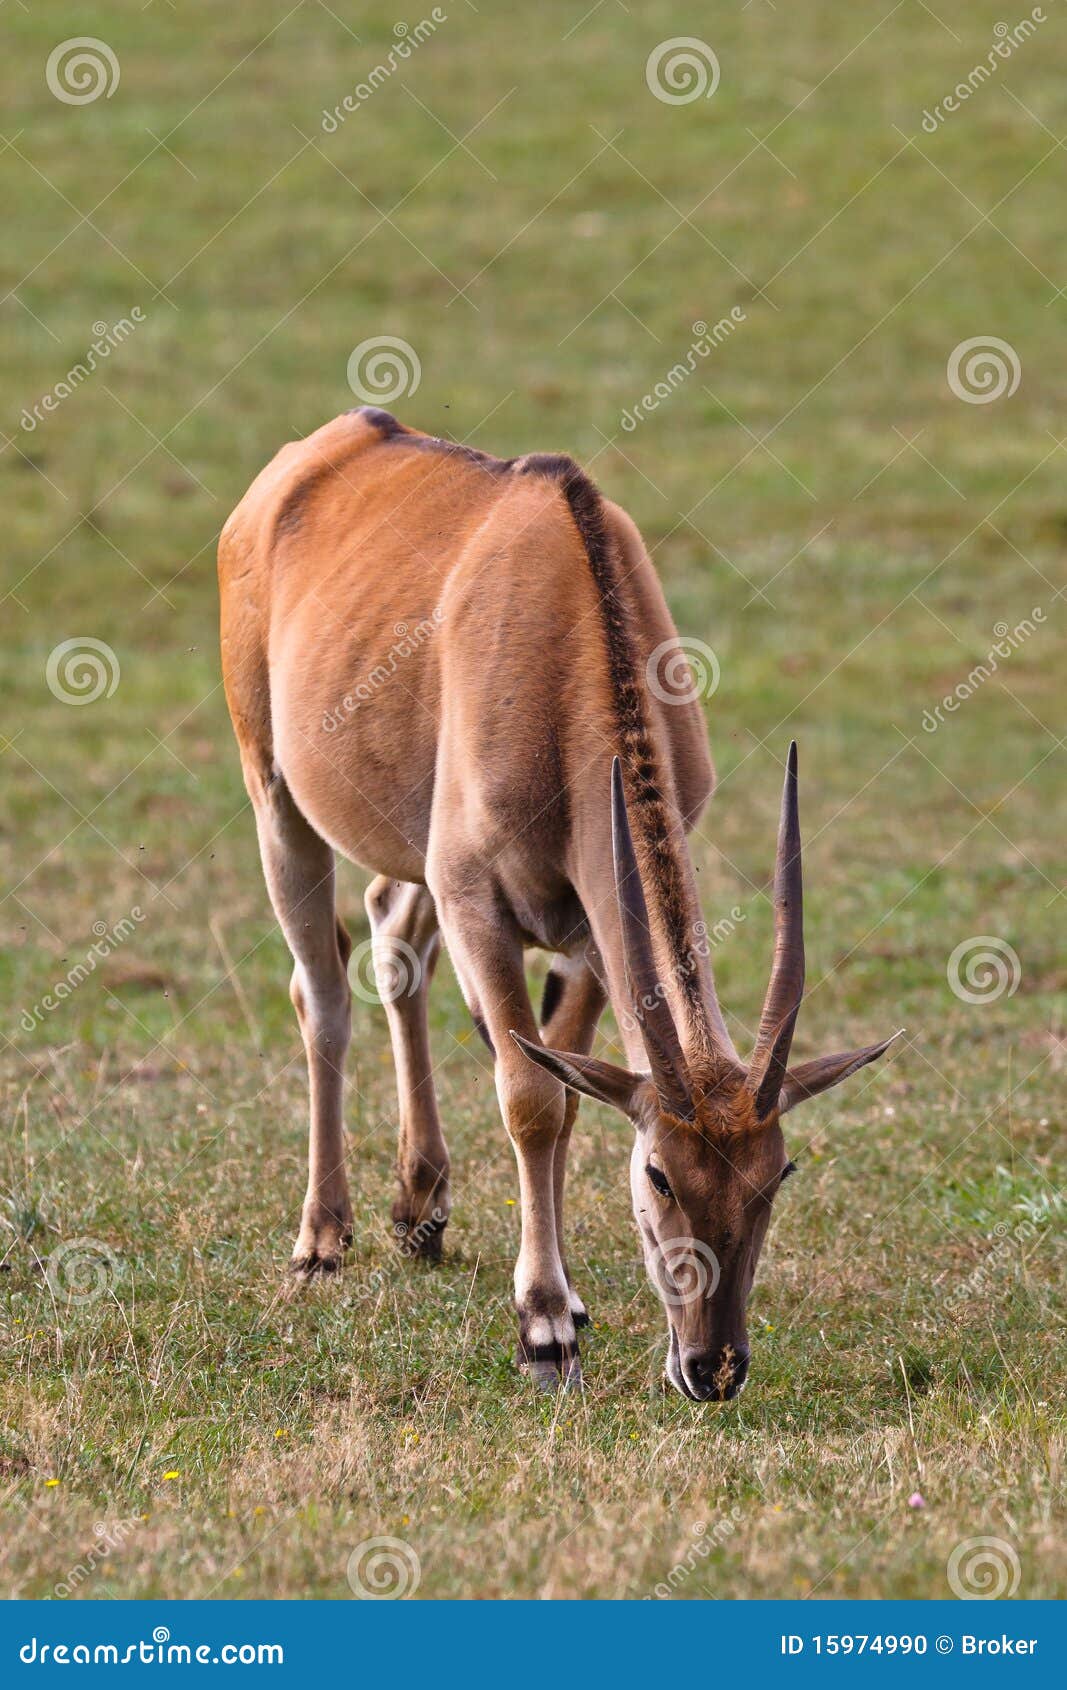 eland, taurotragus oryx